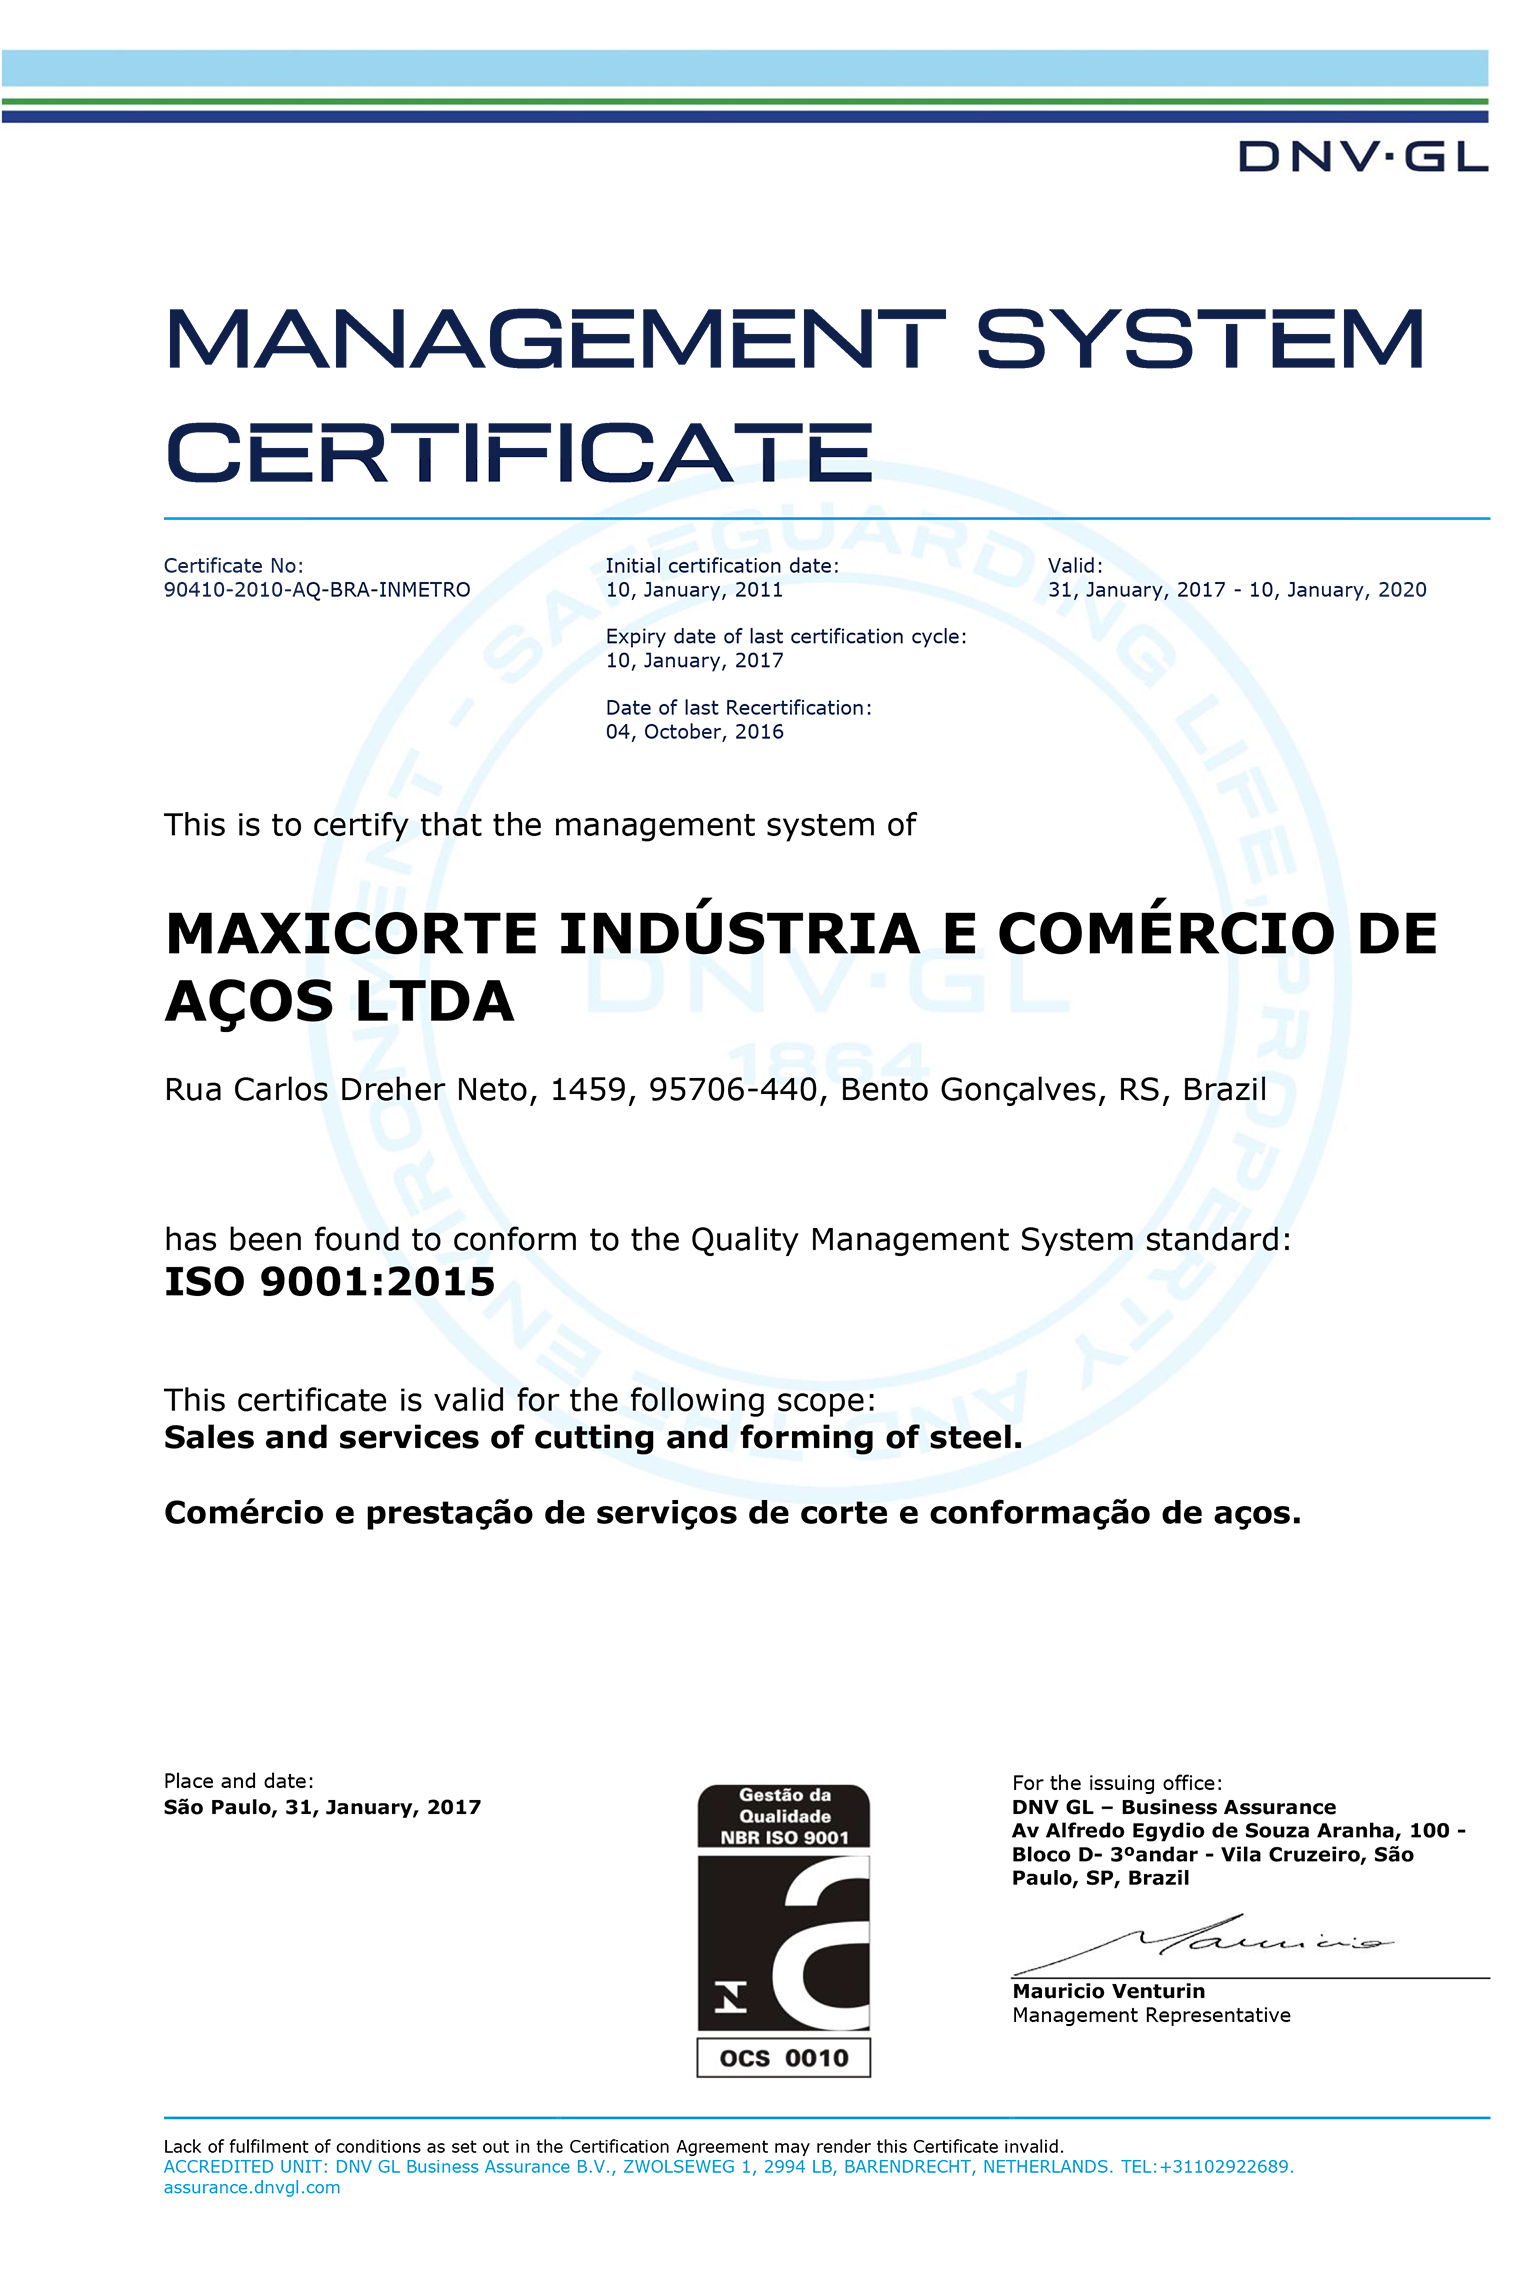 Certificação - Maxicorte